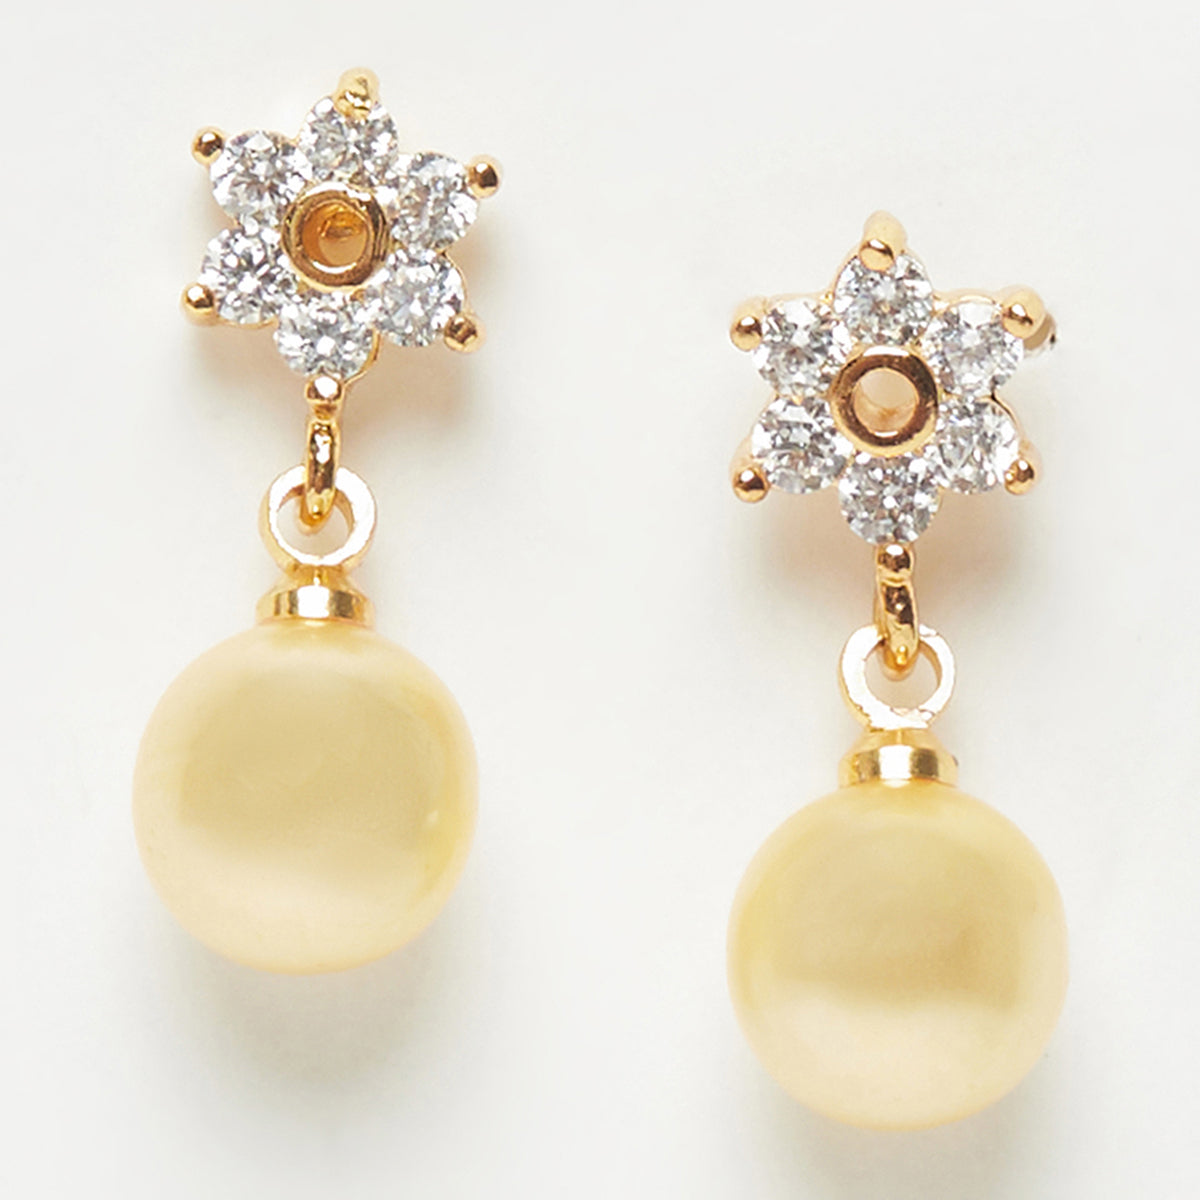 Elegant Drop Earrings with Pearls